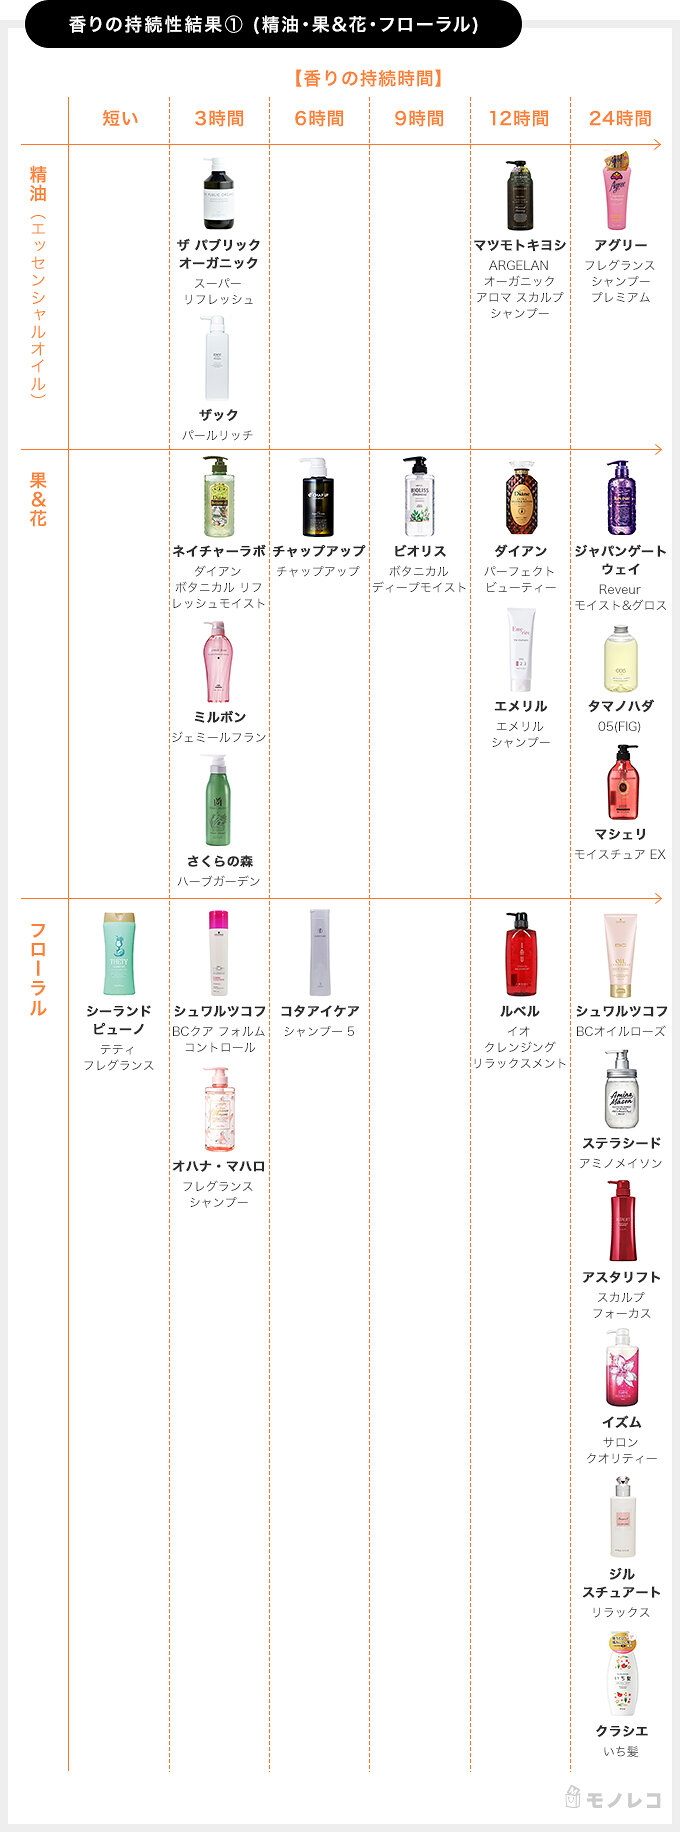 いい匂いのシャンプーおすすめランキングtop38 香りが続く商品を徹底検証 モノレコ By Ameba